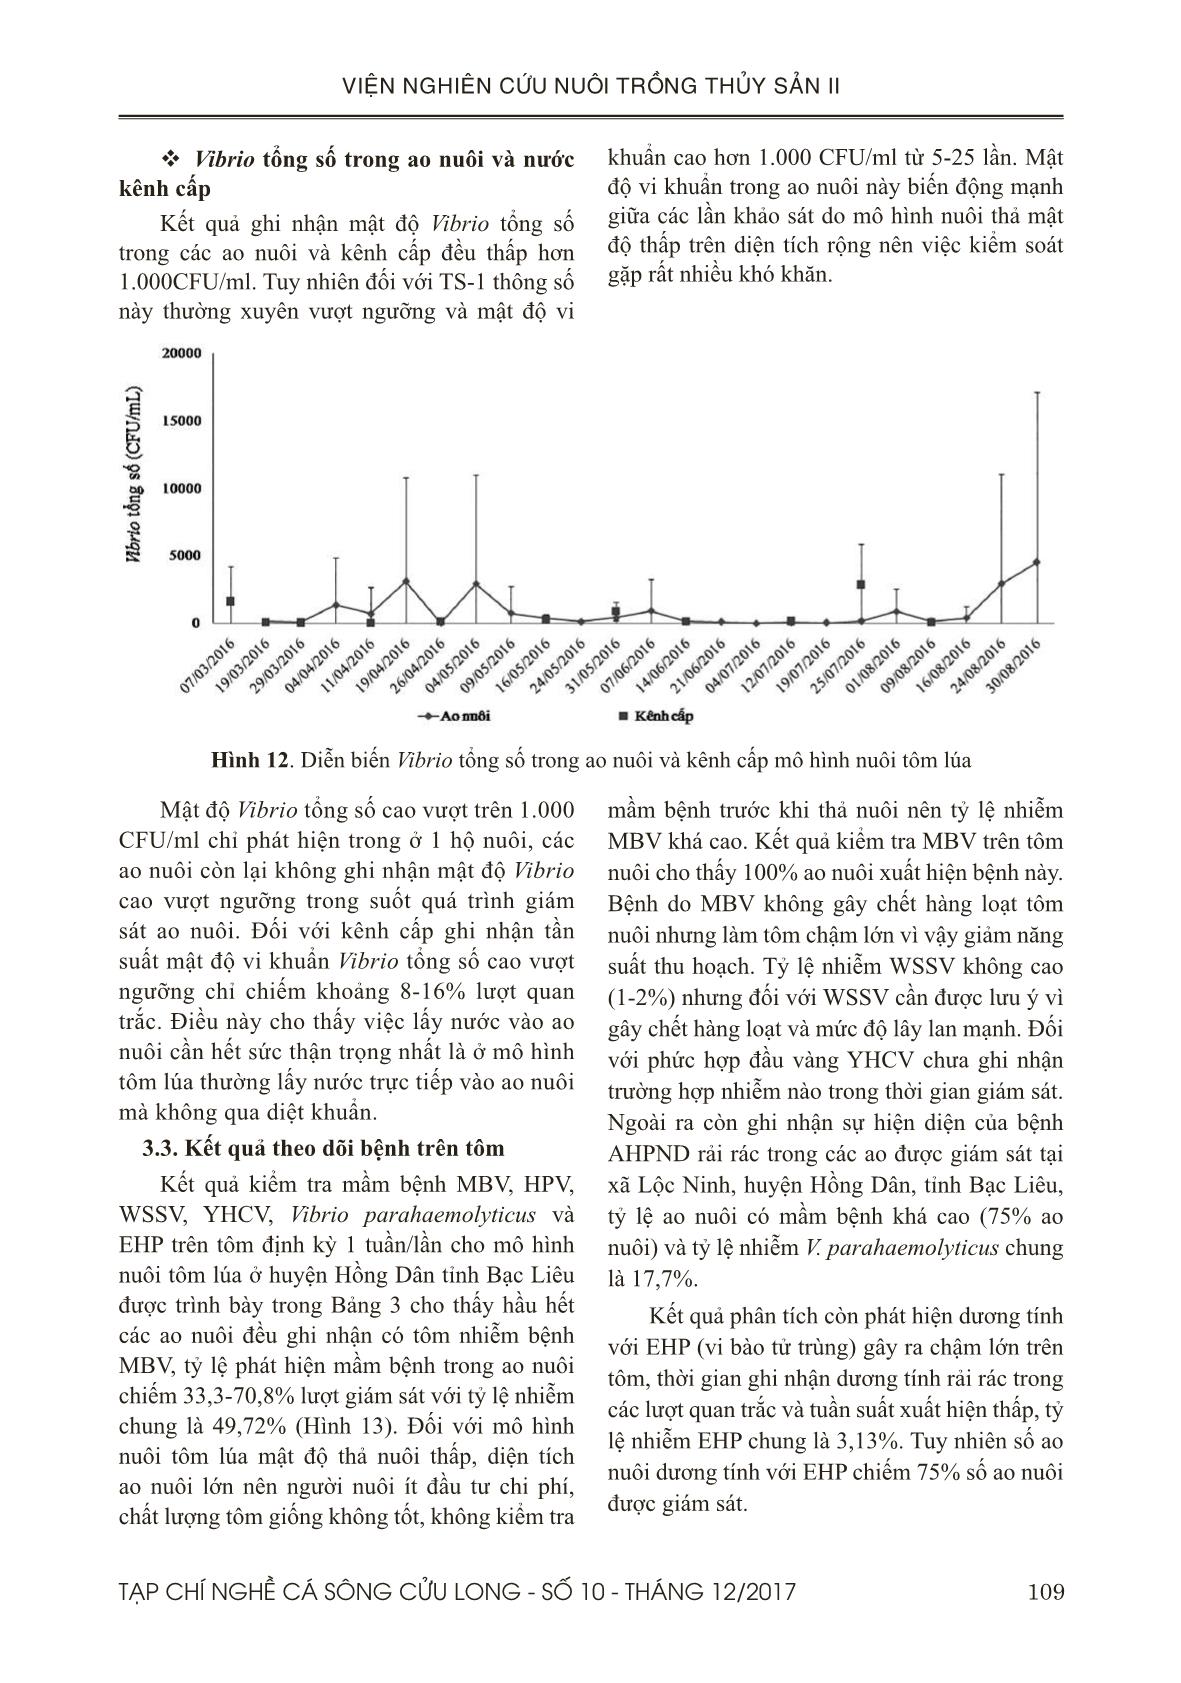 Đánh giá diễn biến chất lượng nước và mầm bệnh trên tôm nuôi mô hình nuôi luân canh tôm lúa trang 9